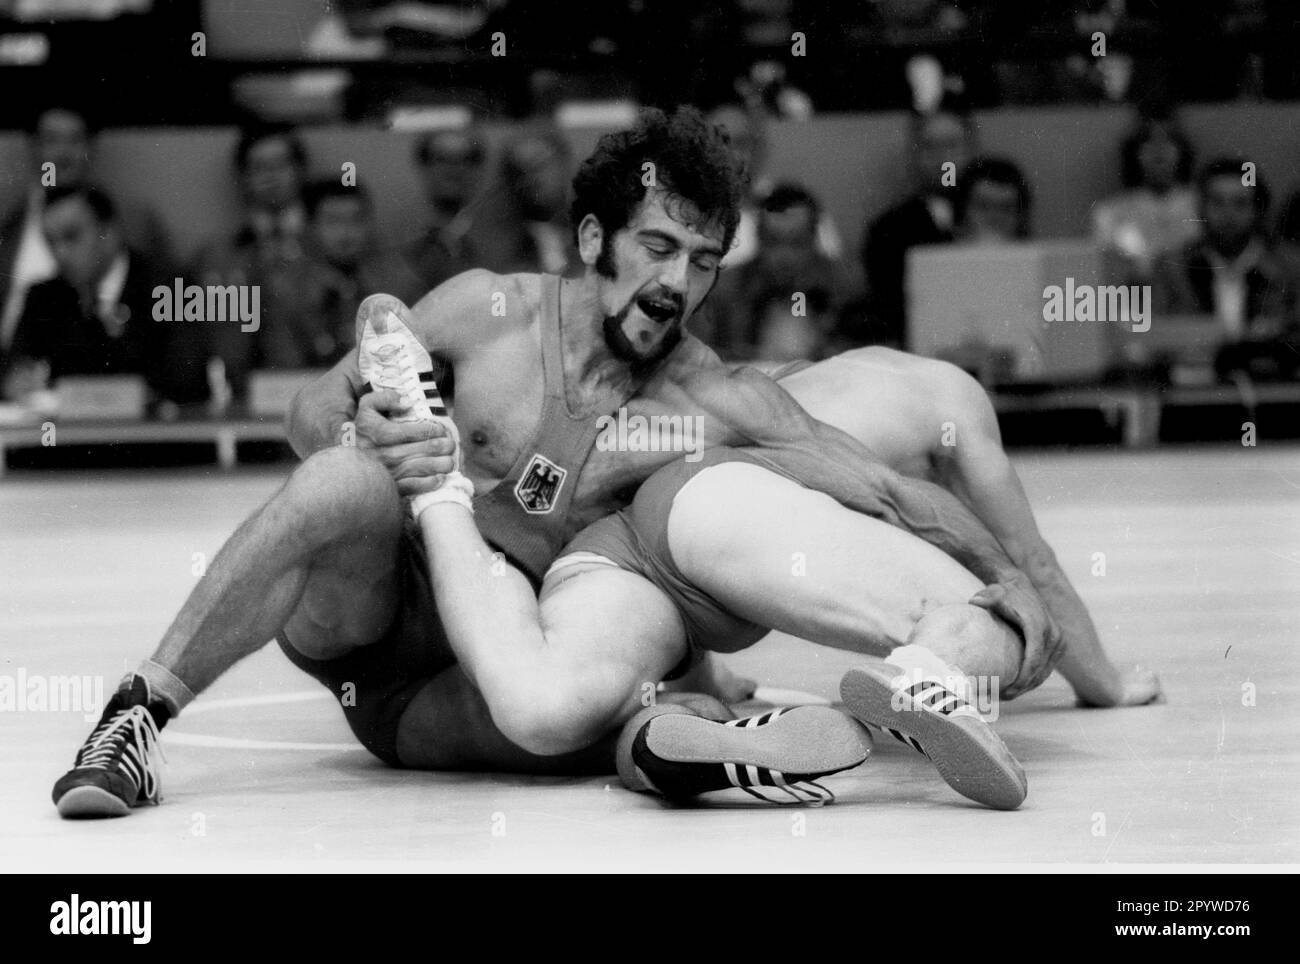 Olympische Spiele, München 1972 Wrestling: Freestyle: Adolf Seger (FRG) im Kampf gegen Mansour Barzegar (Iran) 30.12.1972. [Maschinelle Übersetzung] Stockfoto